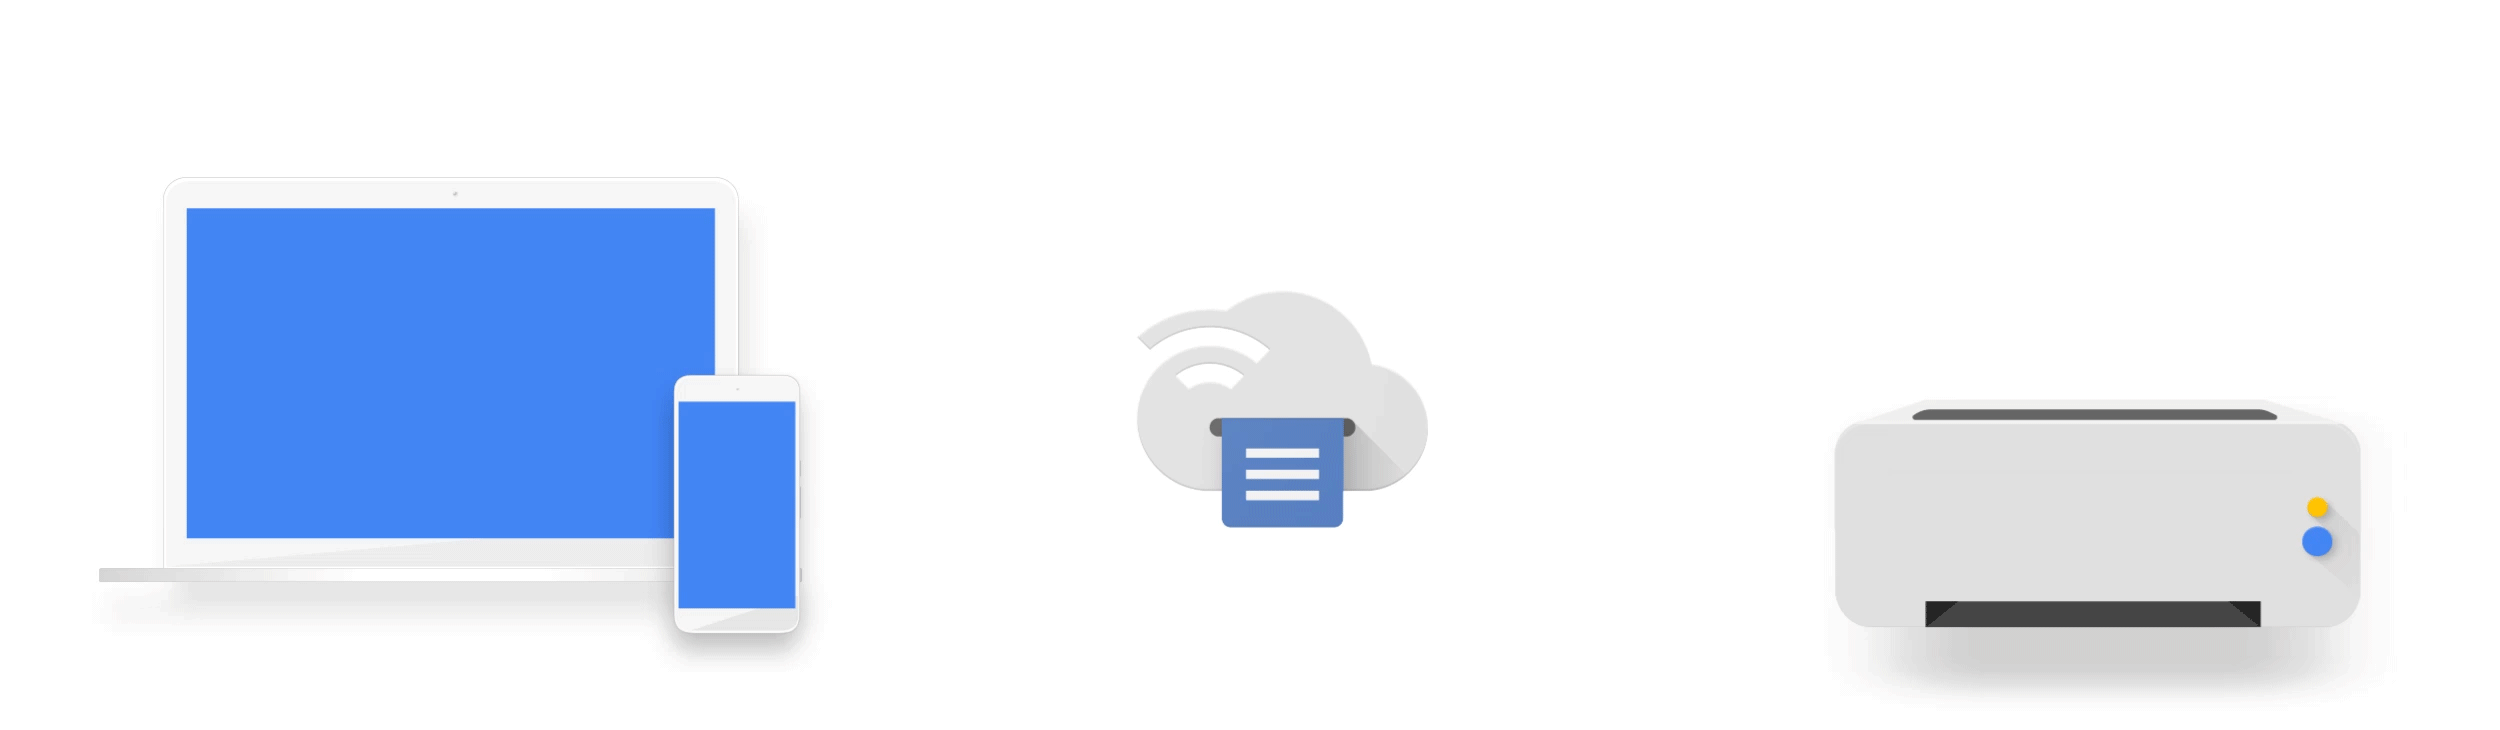 الطابعة السحابية وتقنية قوقل Google Cloud Print وافضل البدائل لها